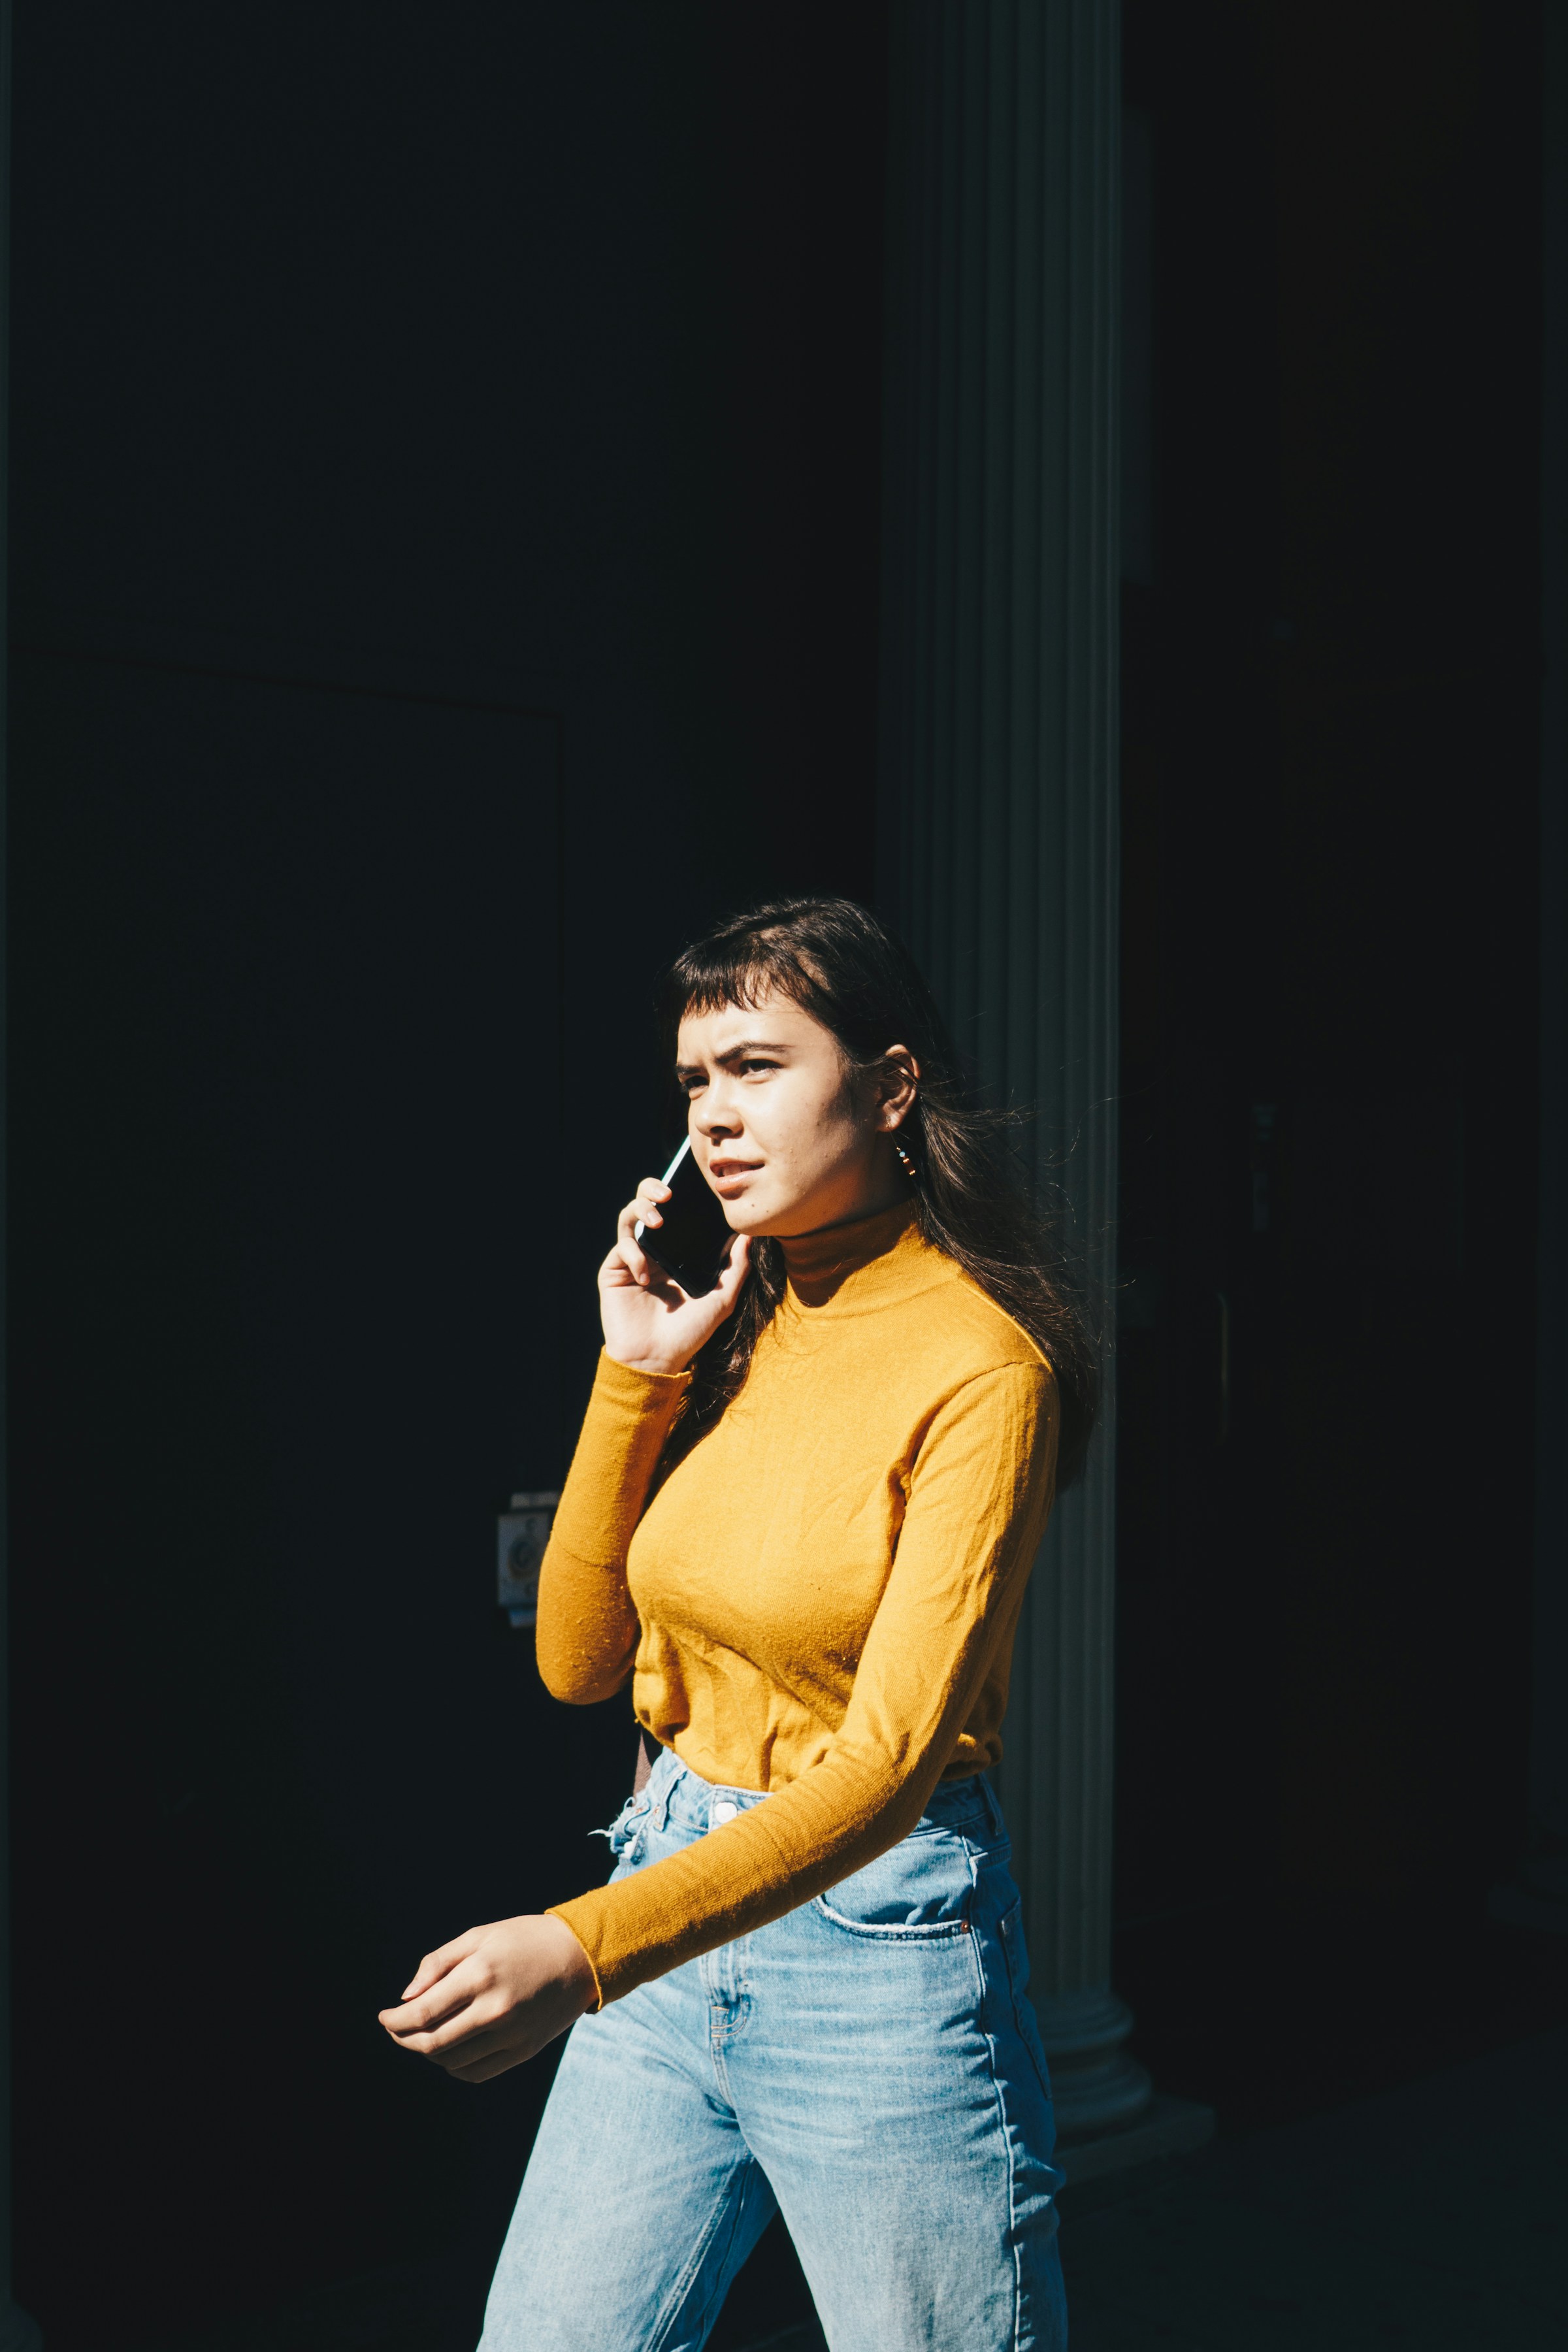 Femme parlant au téléphone | Source : Unsplash